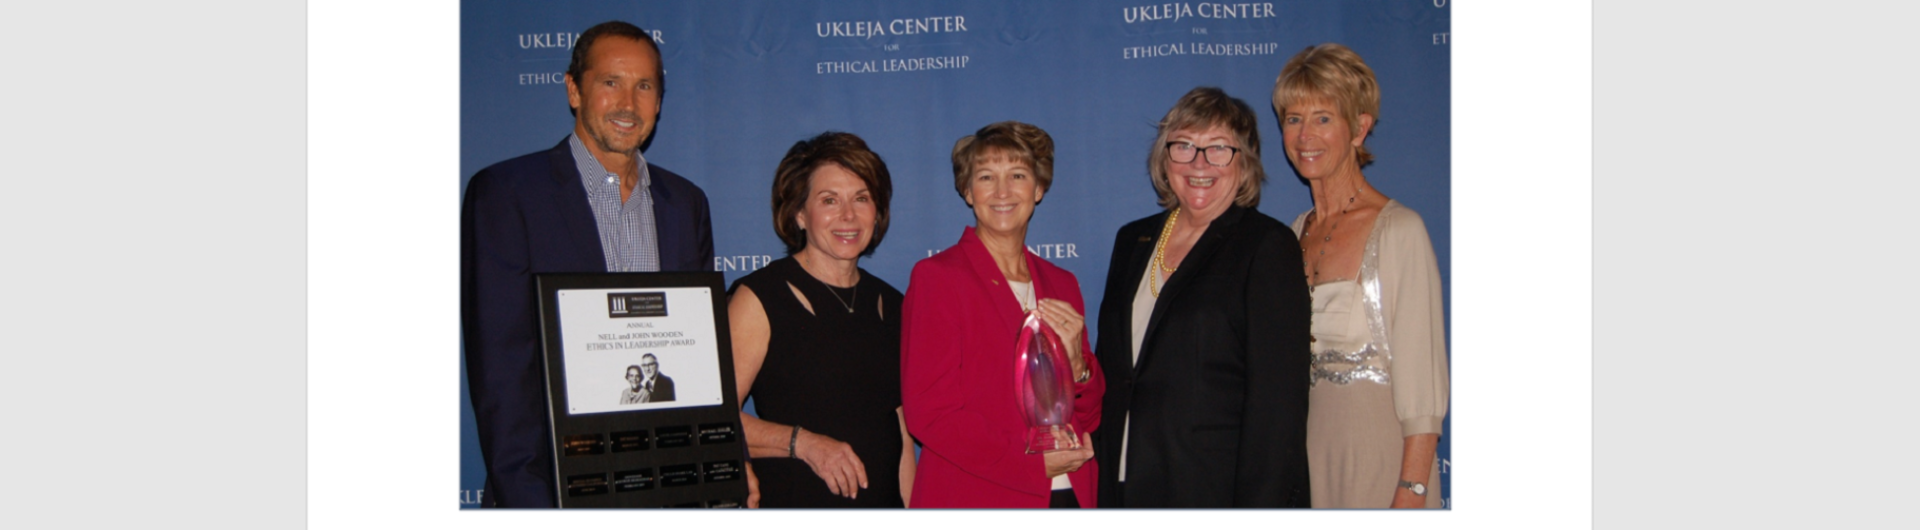 Ukleja Center for Ethical Leadership’s Nell and John Wooden Ethics in Leadership Award Celebration